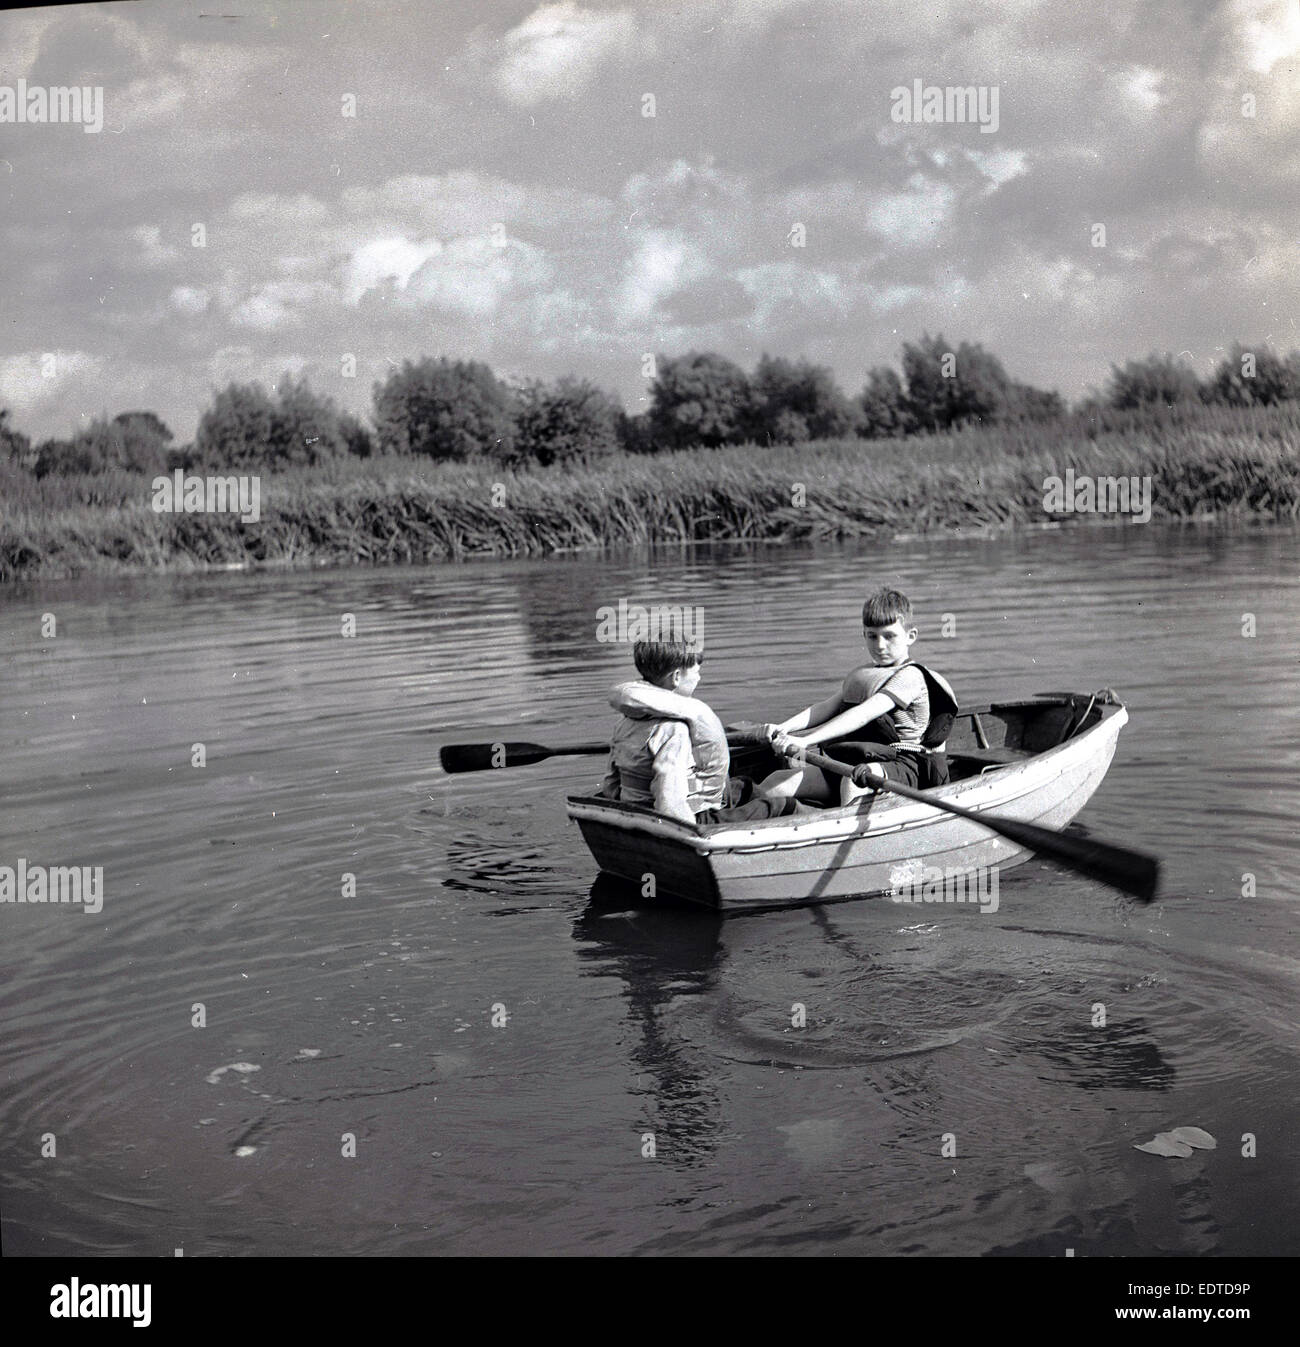 Années 1950, tableau historique, deux jeunes garçons portant des gilets de sauvetage d'un petit bateau à rames sur une rivière calme. Banque D'Images